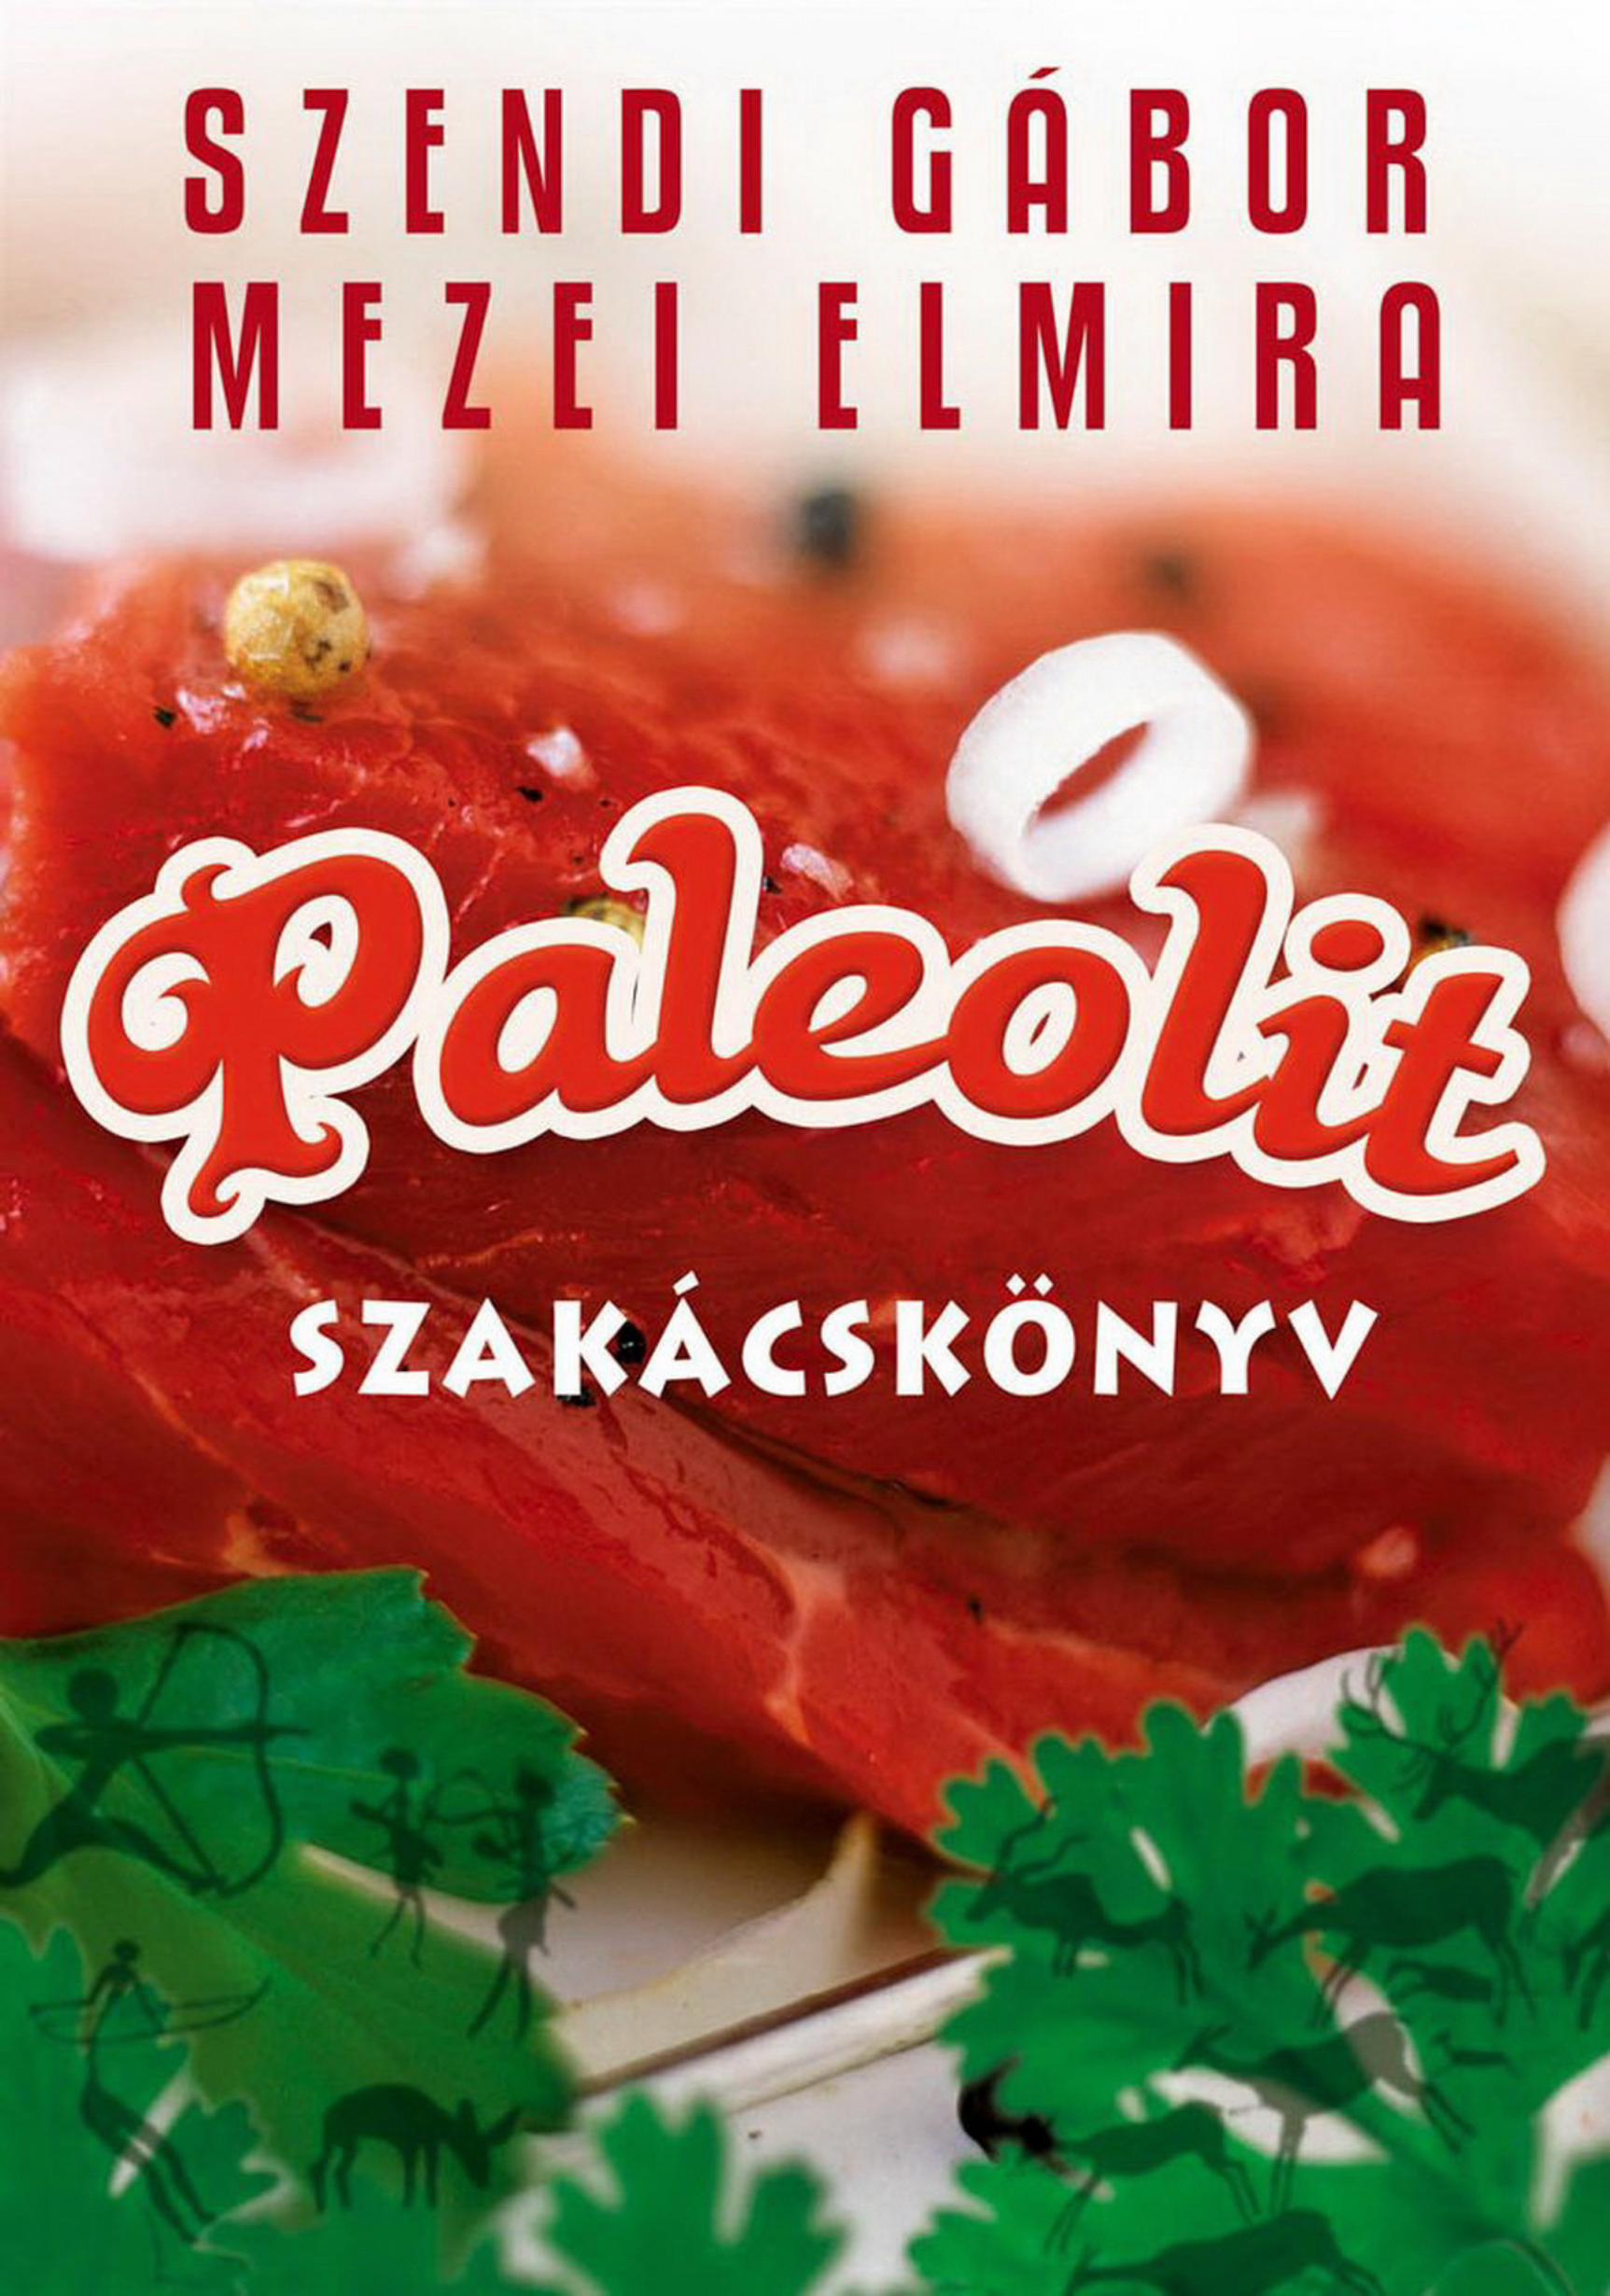 PDF) Szendi Gábor - Paleolit Szakácskönyv - [Sasha] - DOKUMEN.TIPS